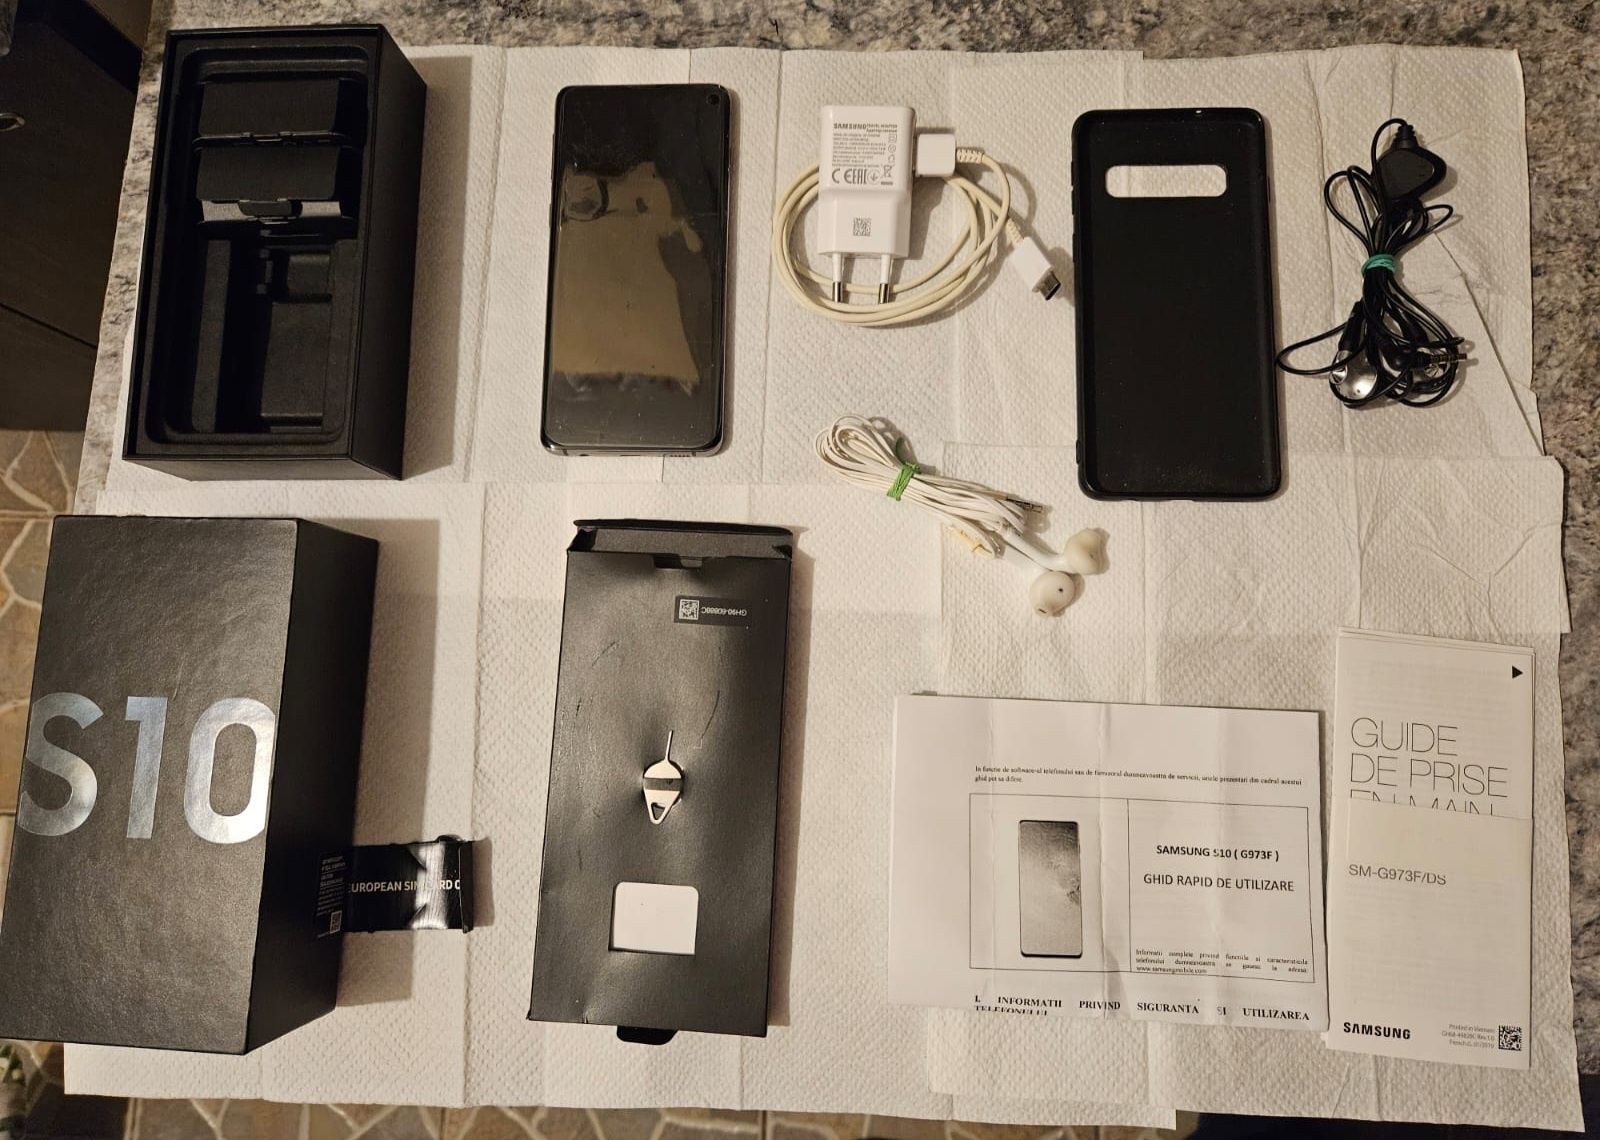 Samsung S10 impecabil nota 10/10 la cutie full cu accesori Orce test